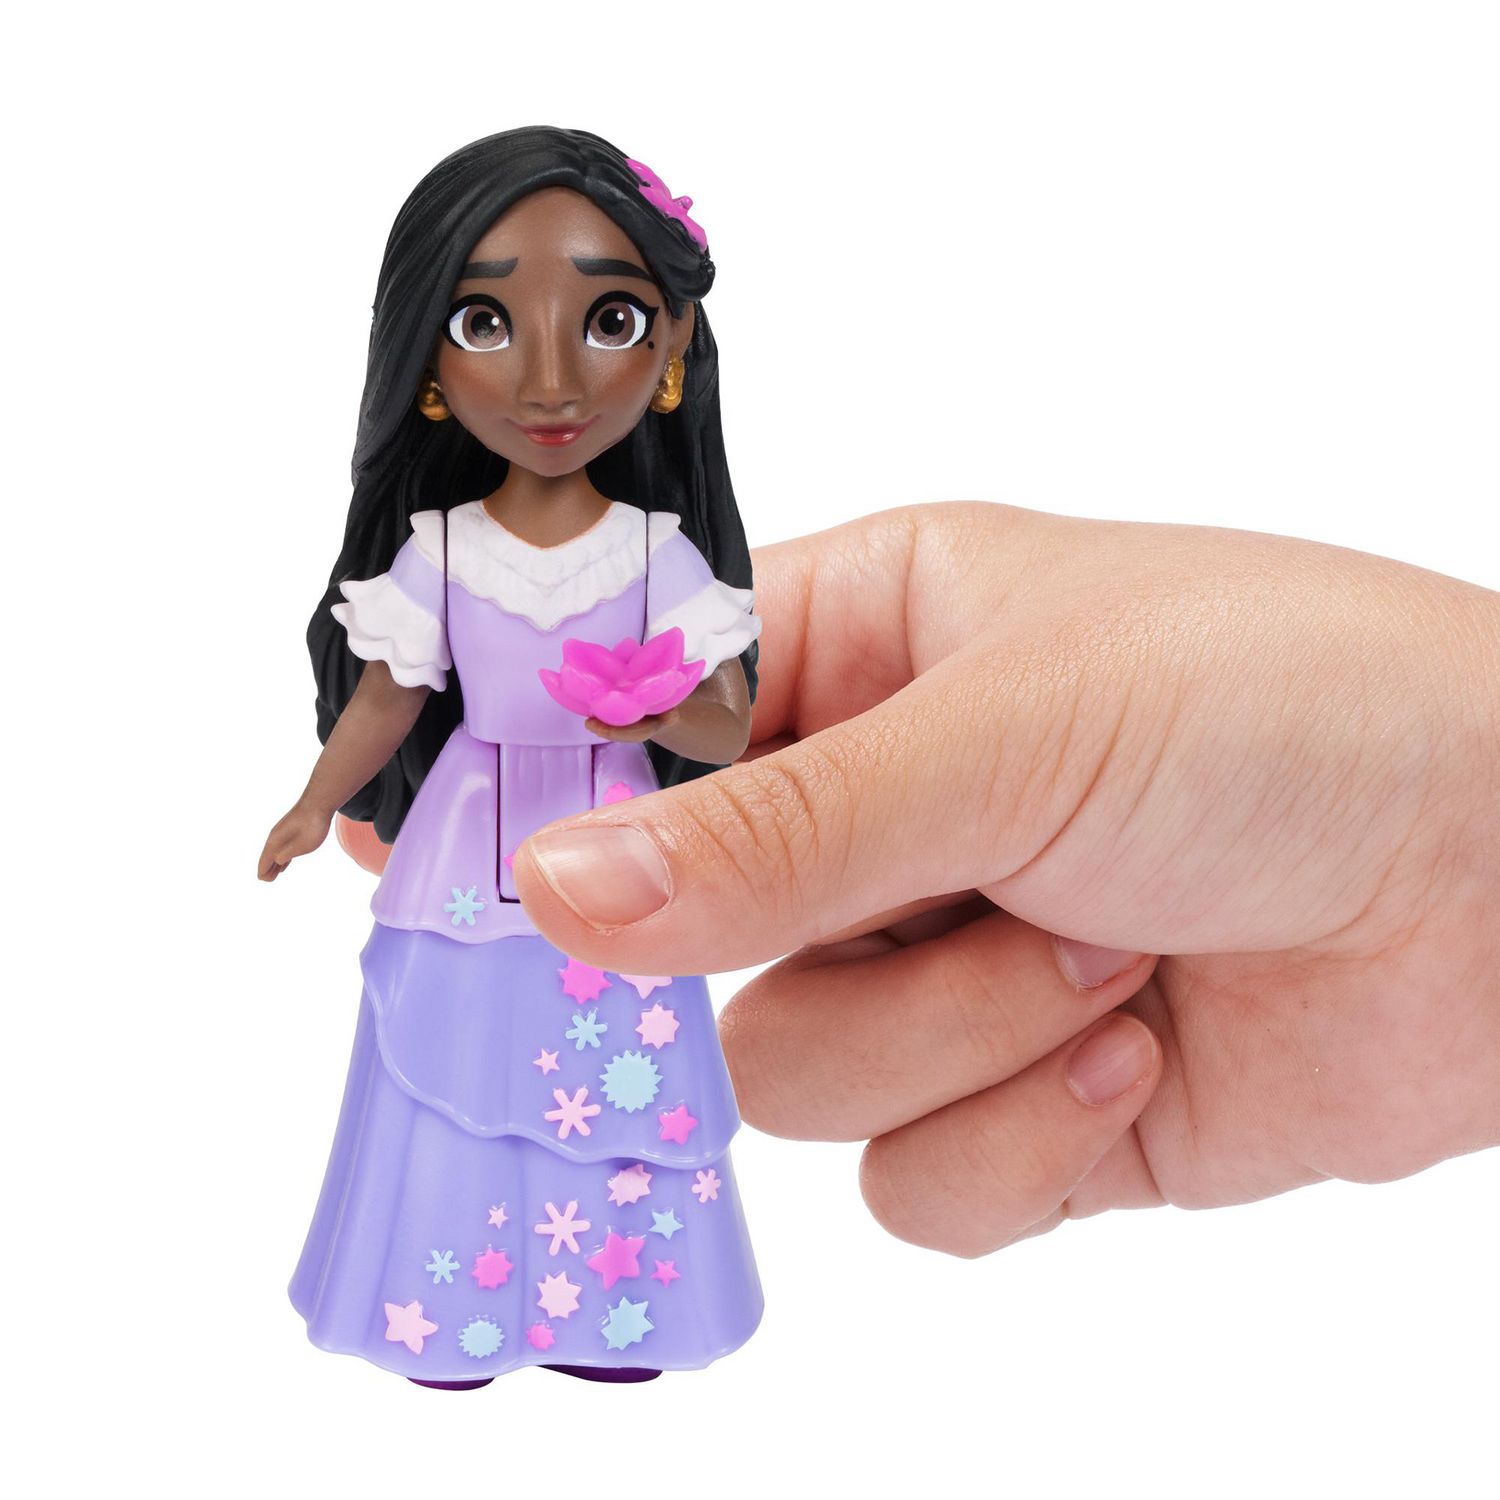 Disney encanto - mini poupee 8 cm avec accessoire, poupees